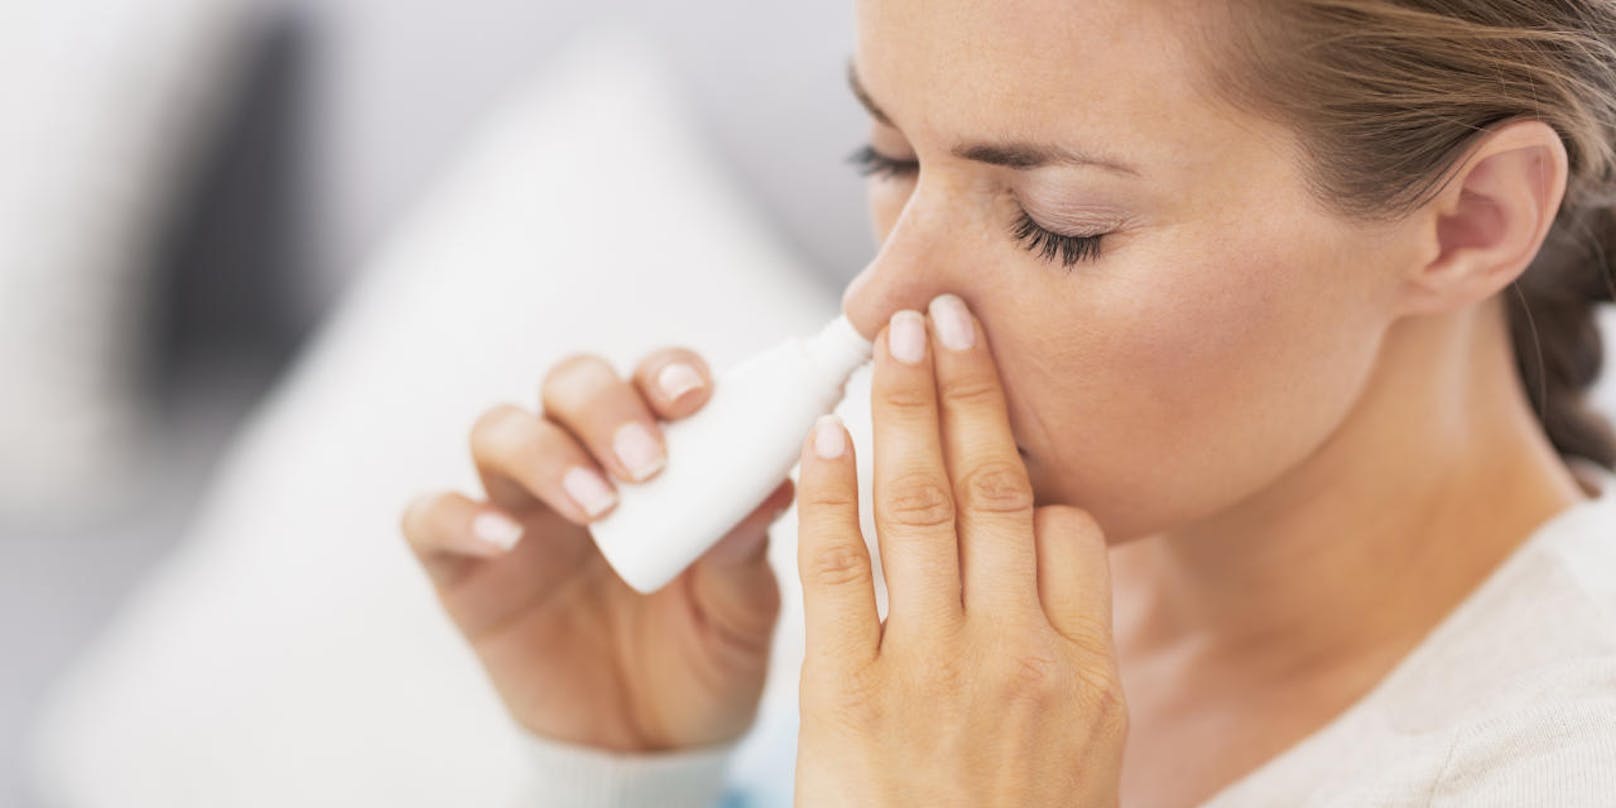 Ein Nasenspray gegen Grippe und Erkältung hat in Tierversuchen Wirkung gegen das Coronavirus gezeigt. (Symbolbild)